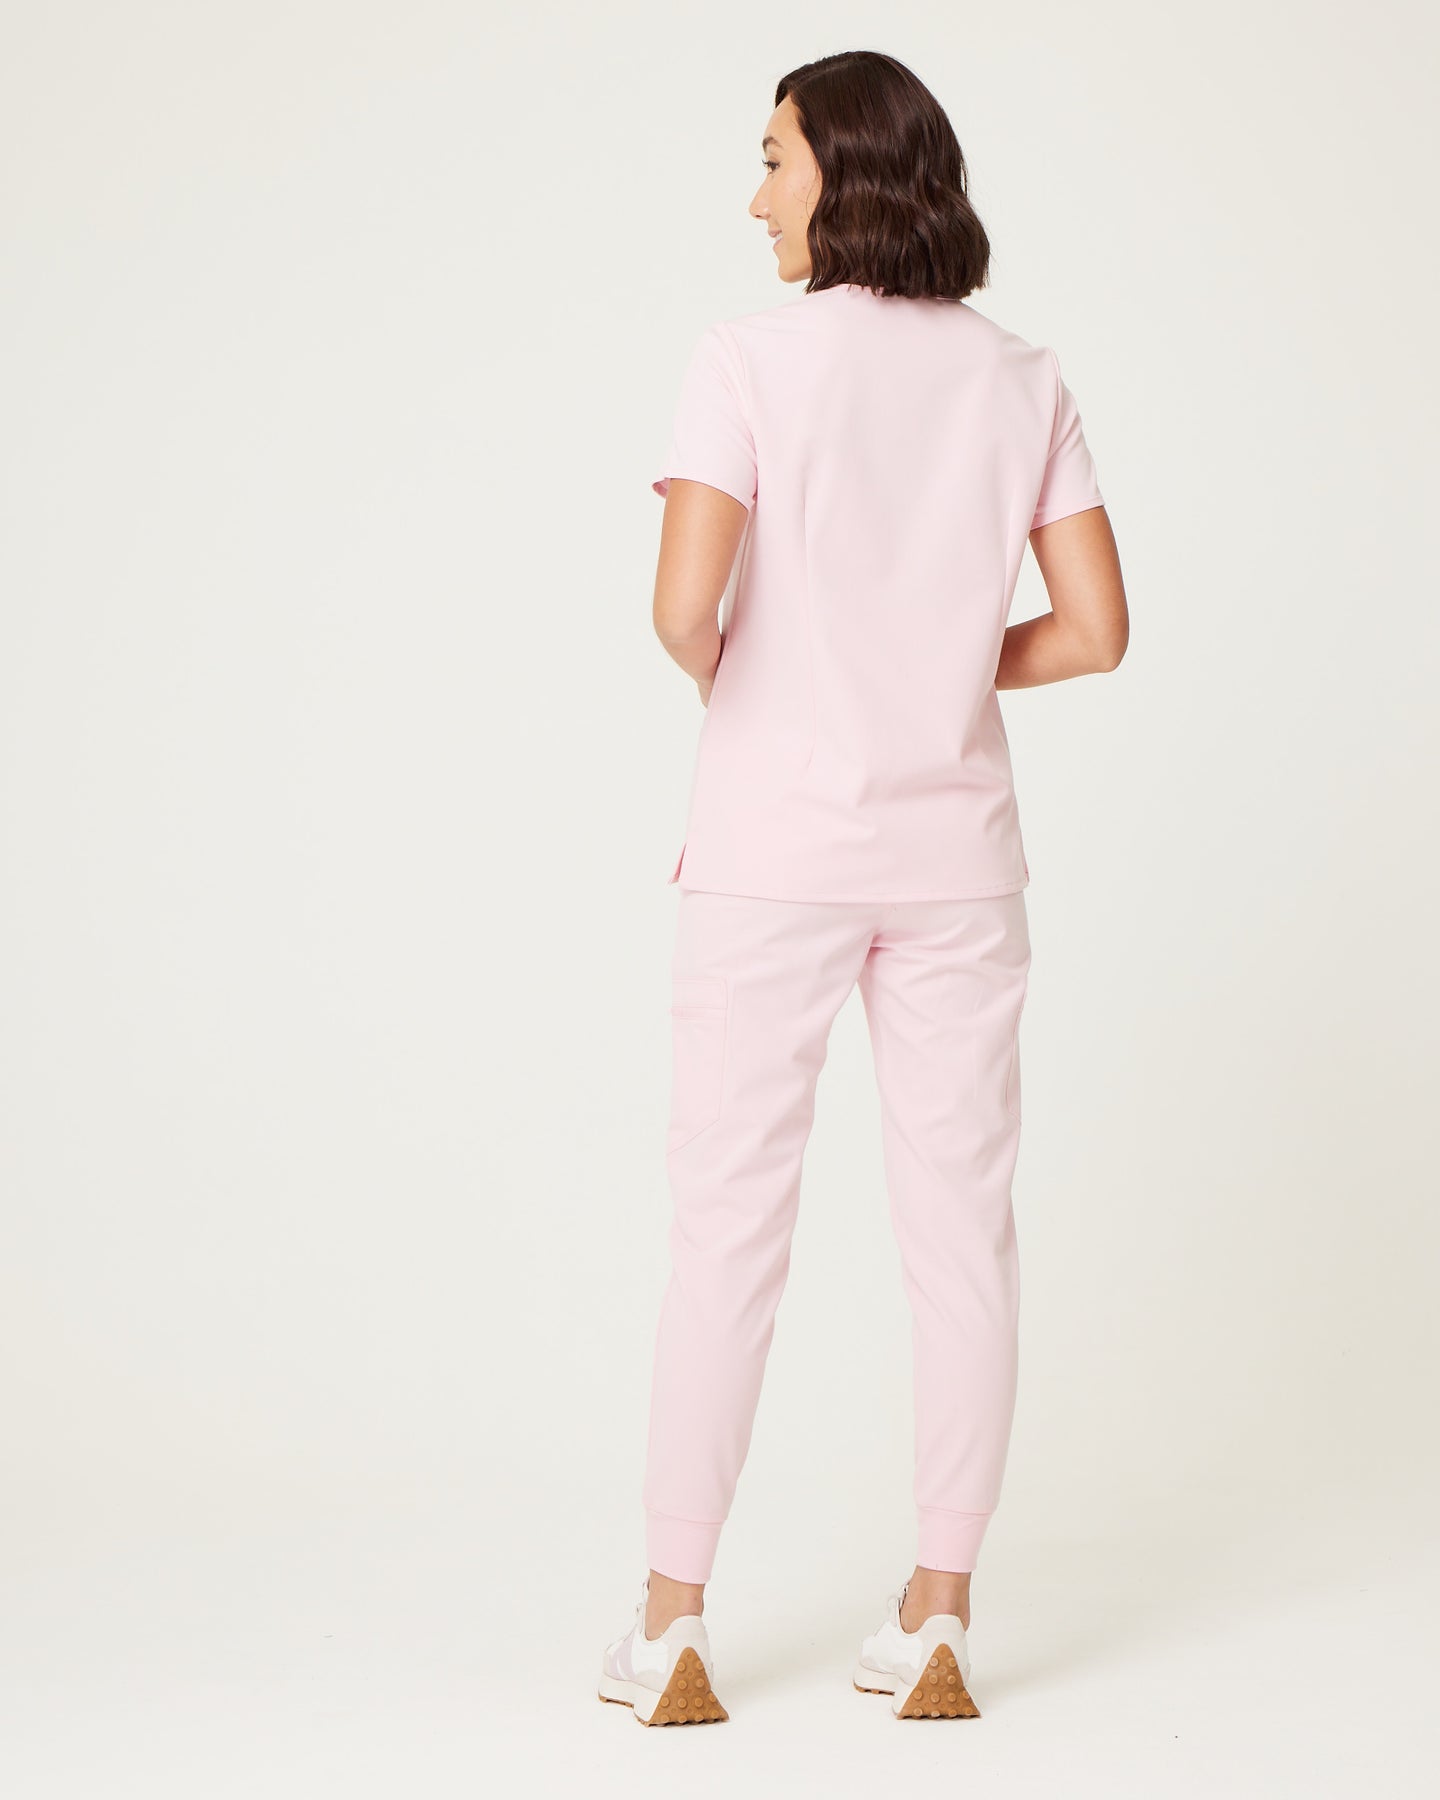 ELIZABETH Two Pocket Scrub Top (Original SLTECH™ fabric) - Powder Pink ...